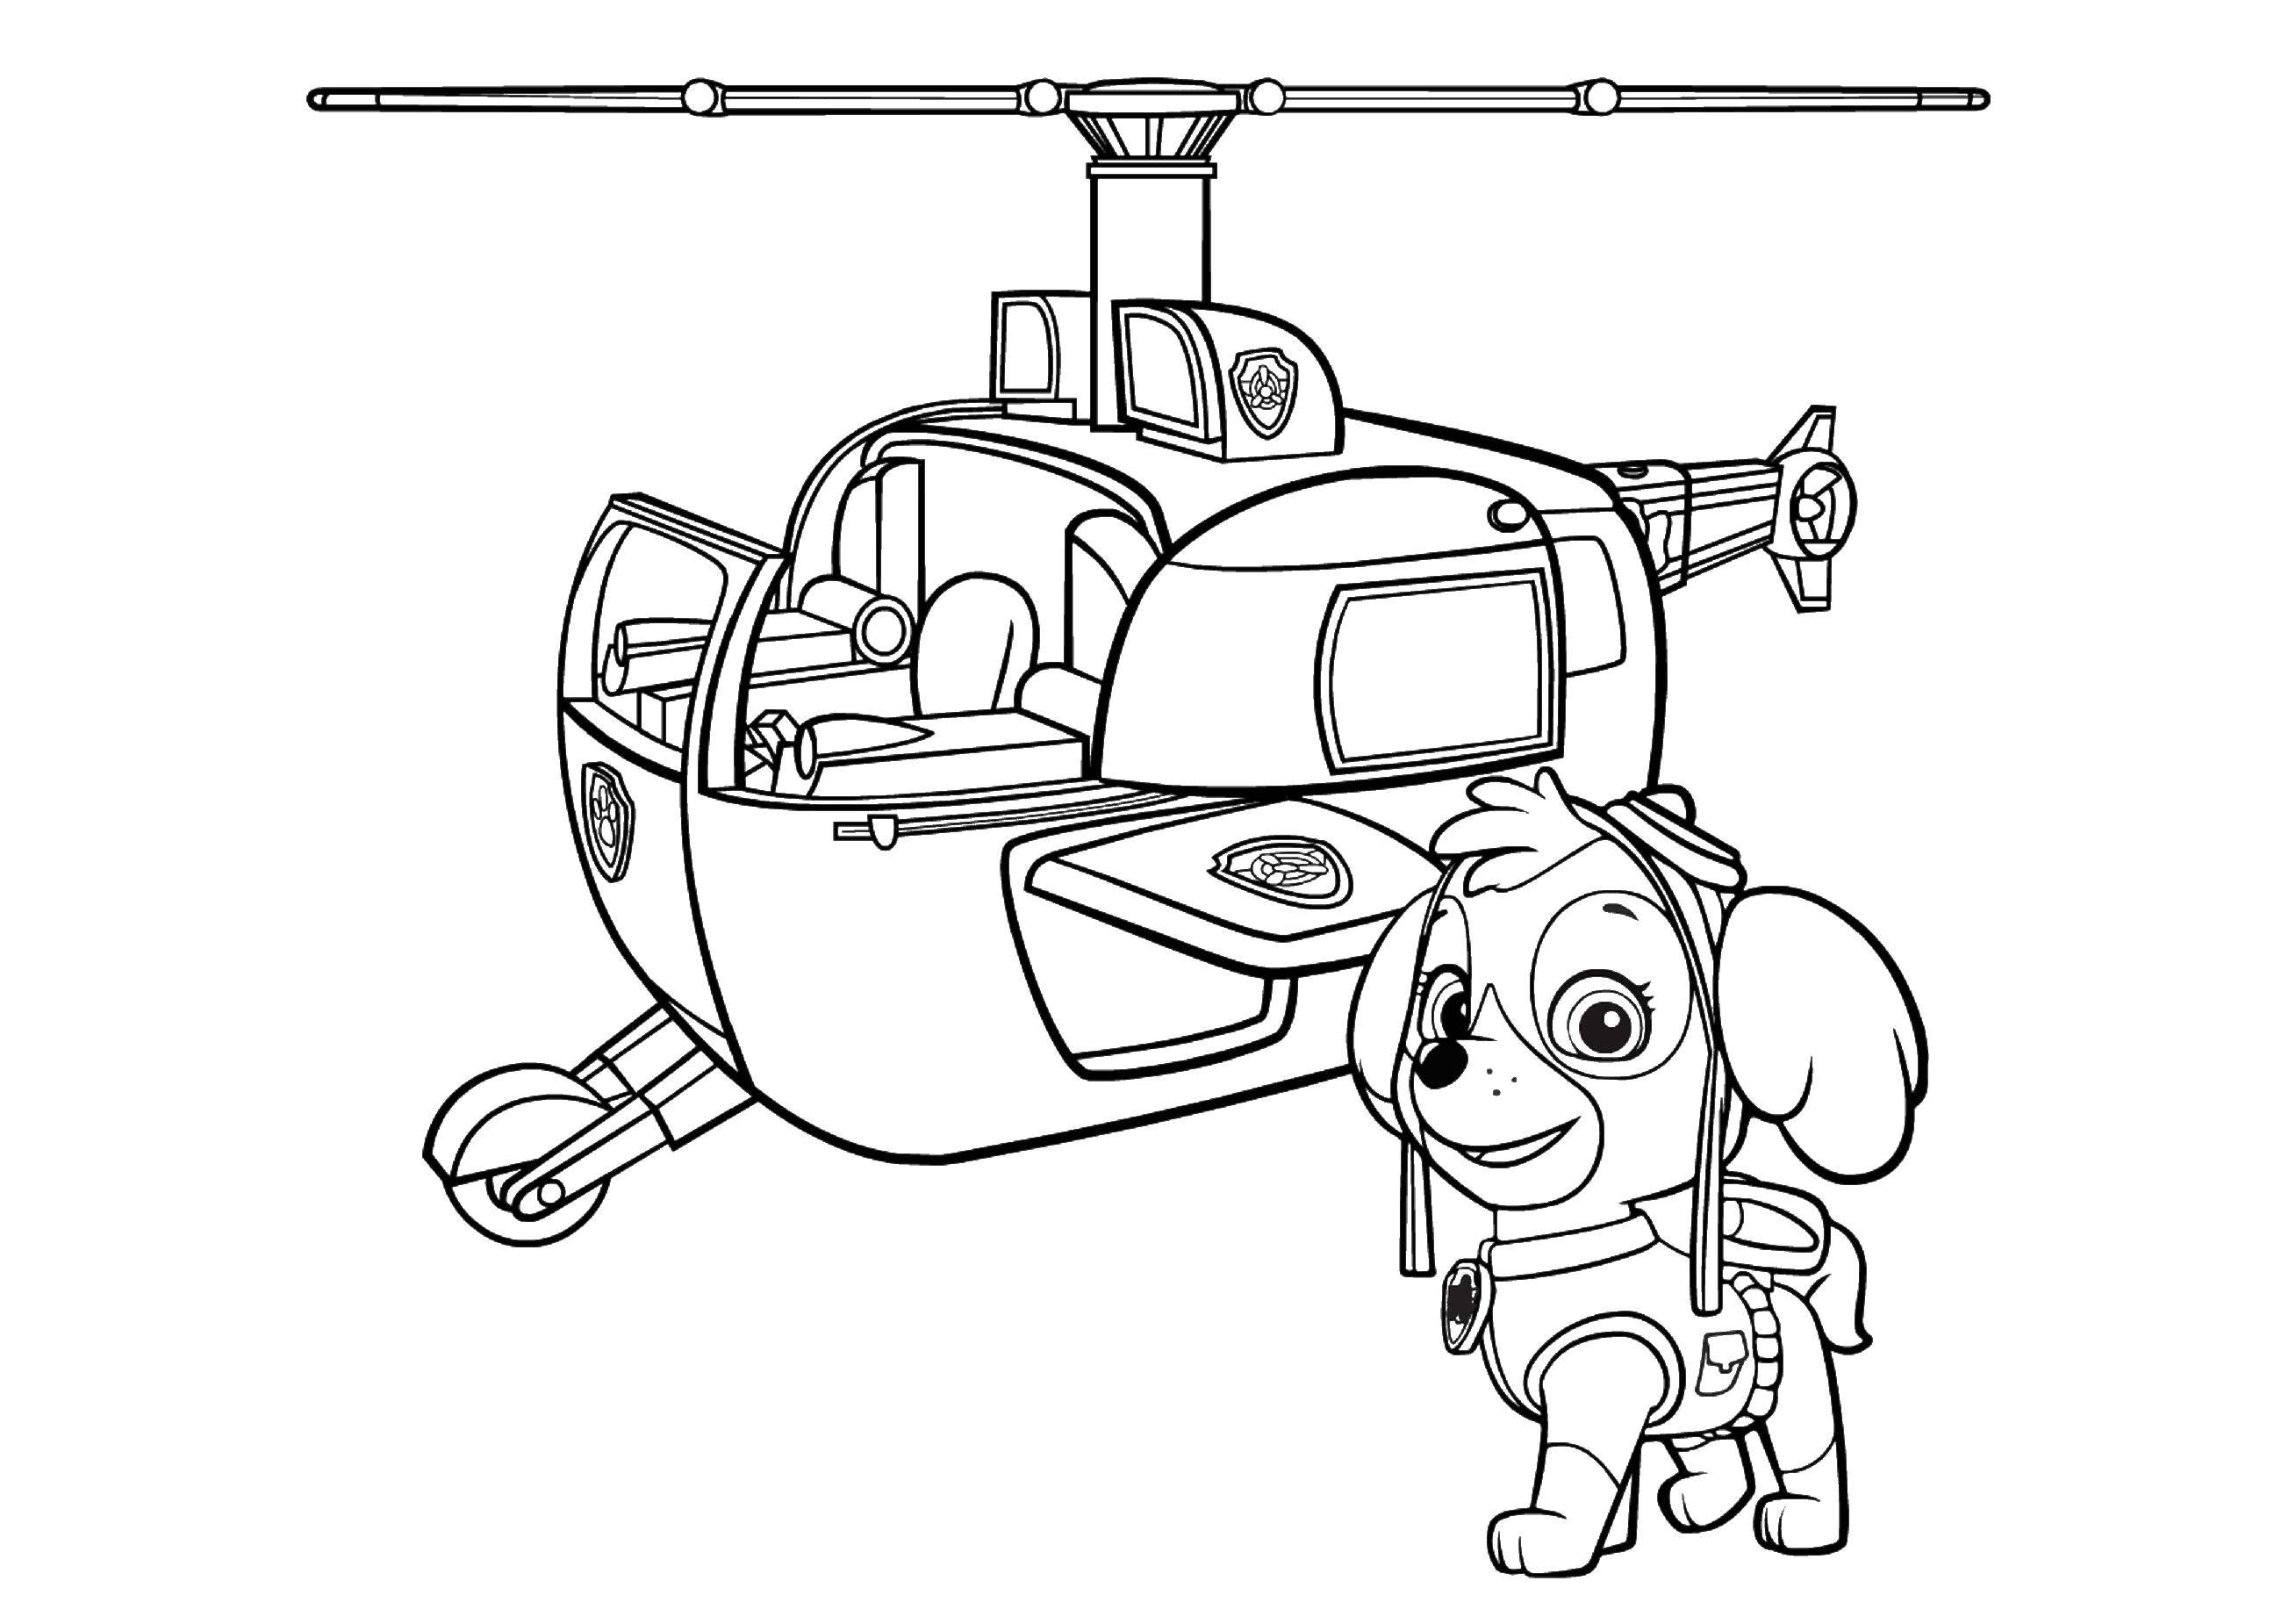   Скай щенок кокапу передвигается на розовом вертолете